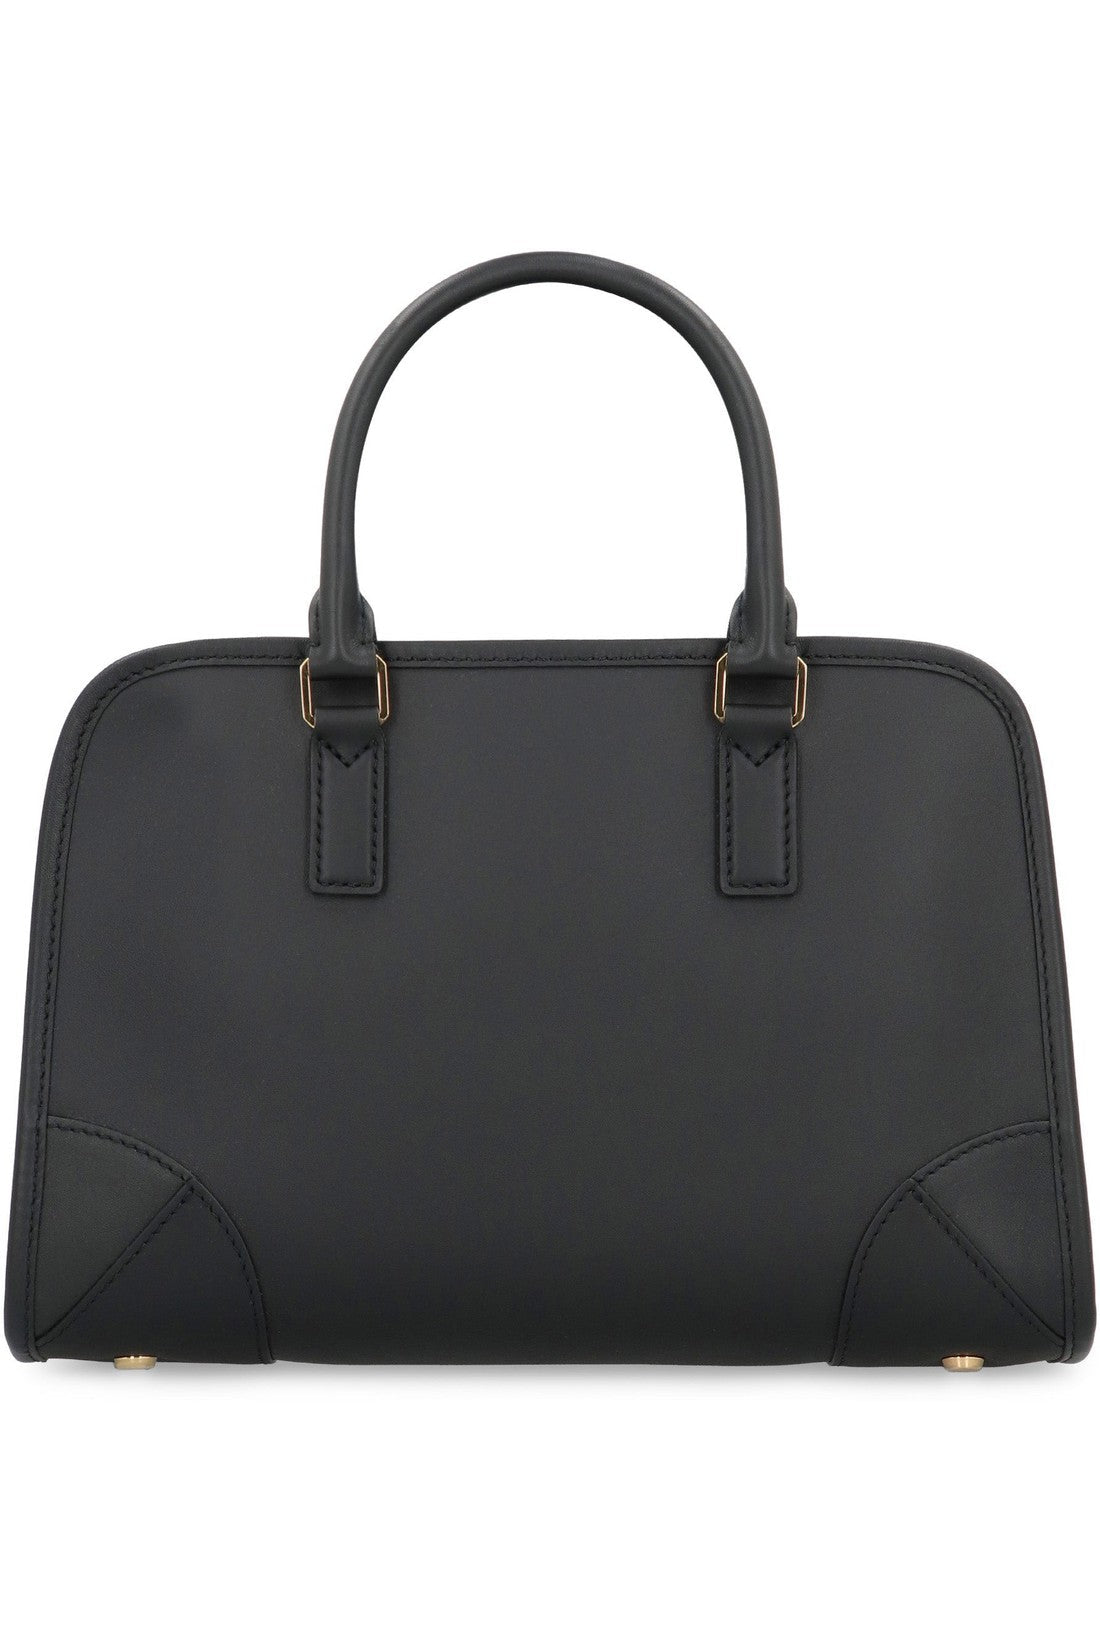 MCM-OUTLET-SALE-Aren Boston Leather handbag-ARCHIVIST